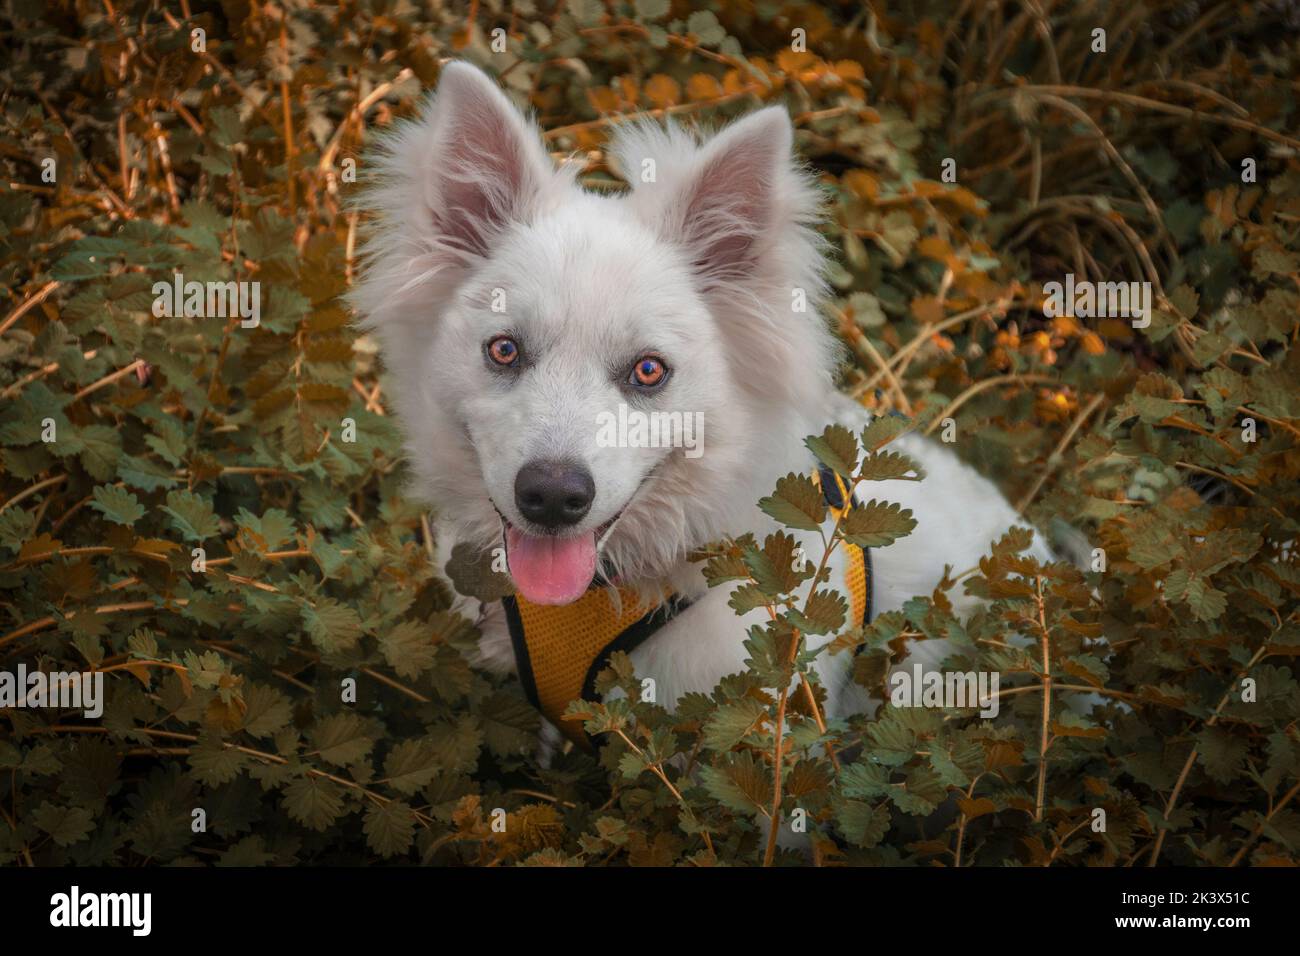 Perro blanco de Halloween con ojos anaranjados sentado en medio de plantas anaranjadas y verdes coloridas mirando la pantalla- cachorro de esquimal americano Foto de stock